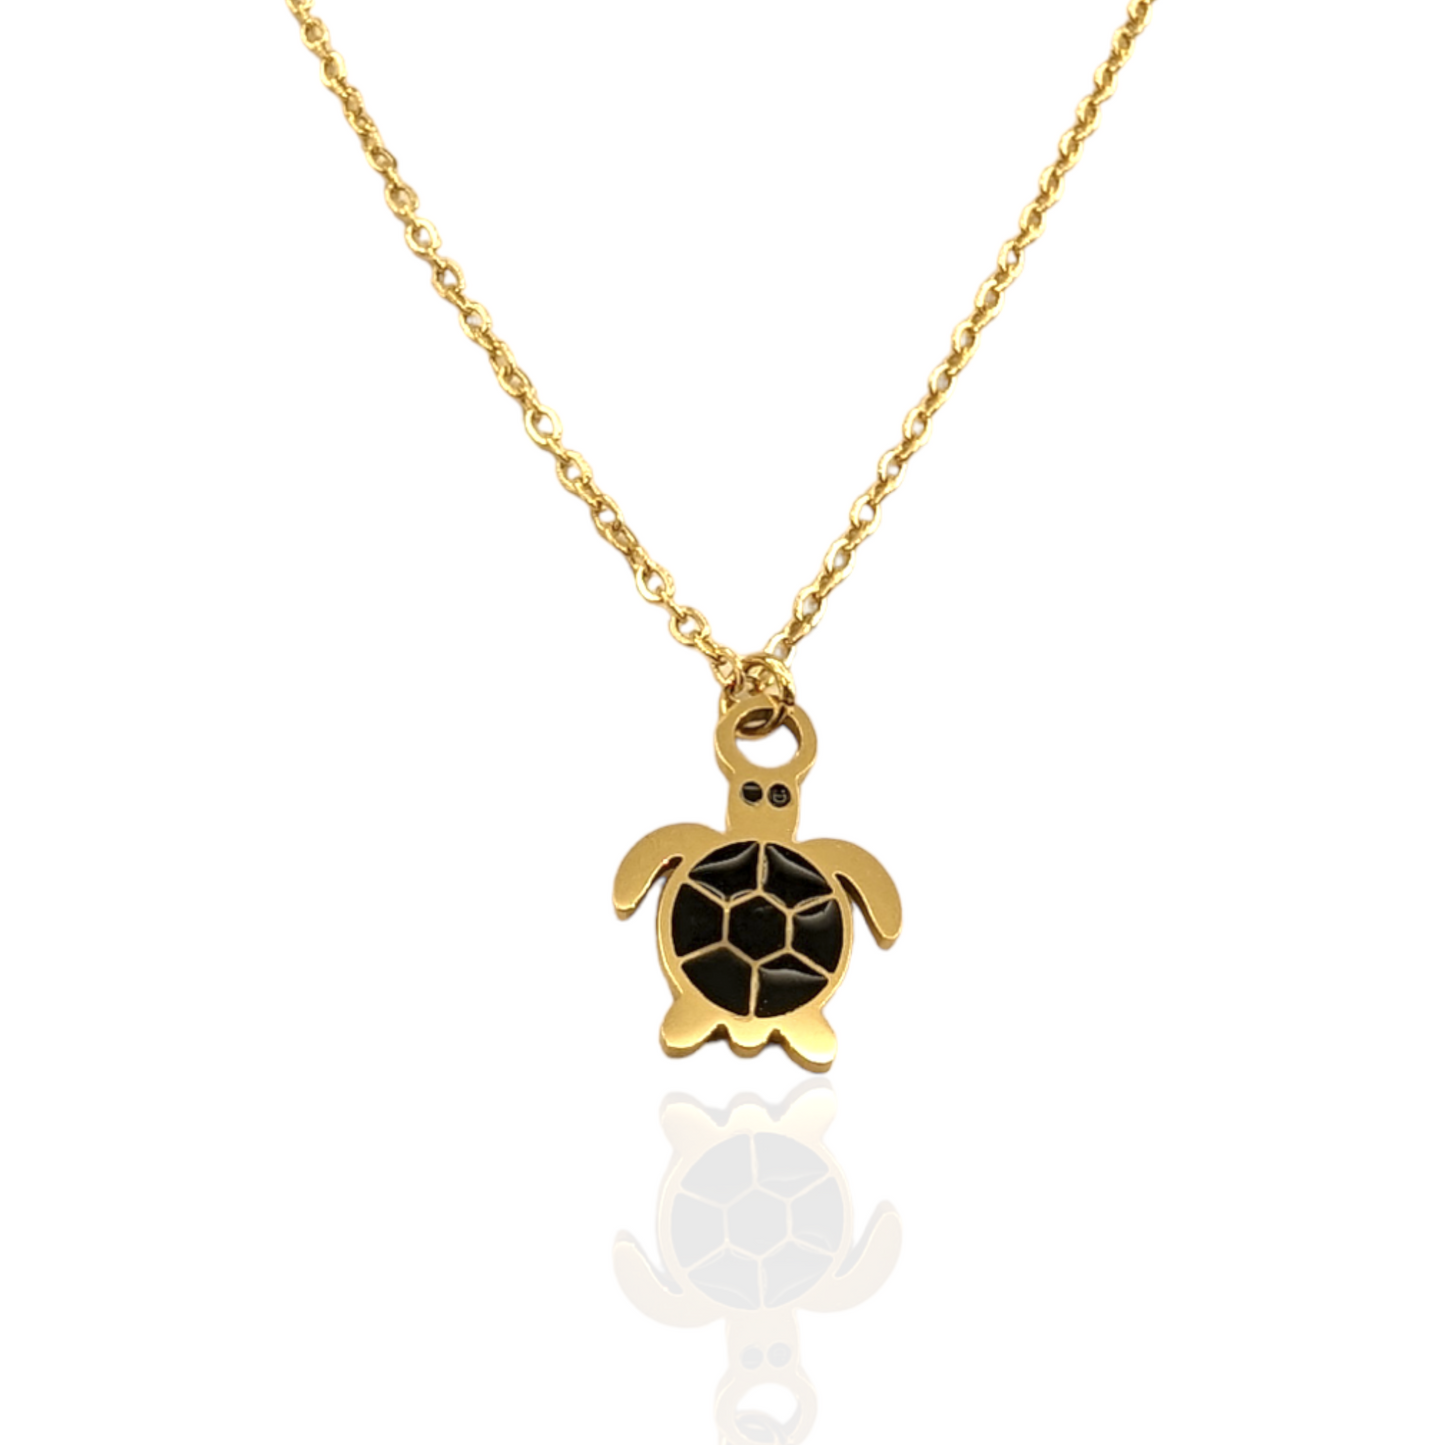 Turtle necklace waterproof ailana jewelry. Bigiotteria resistente all'acqua